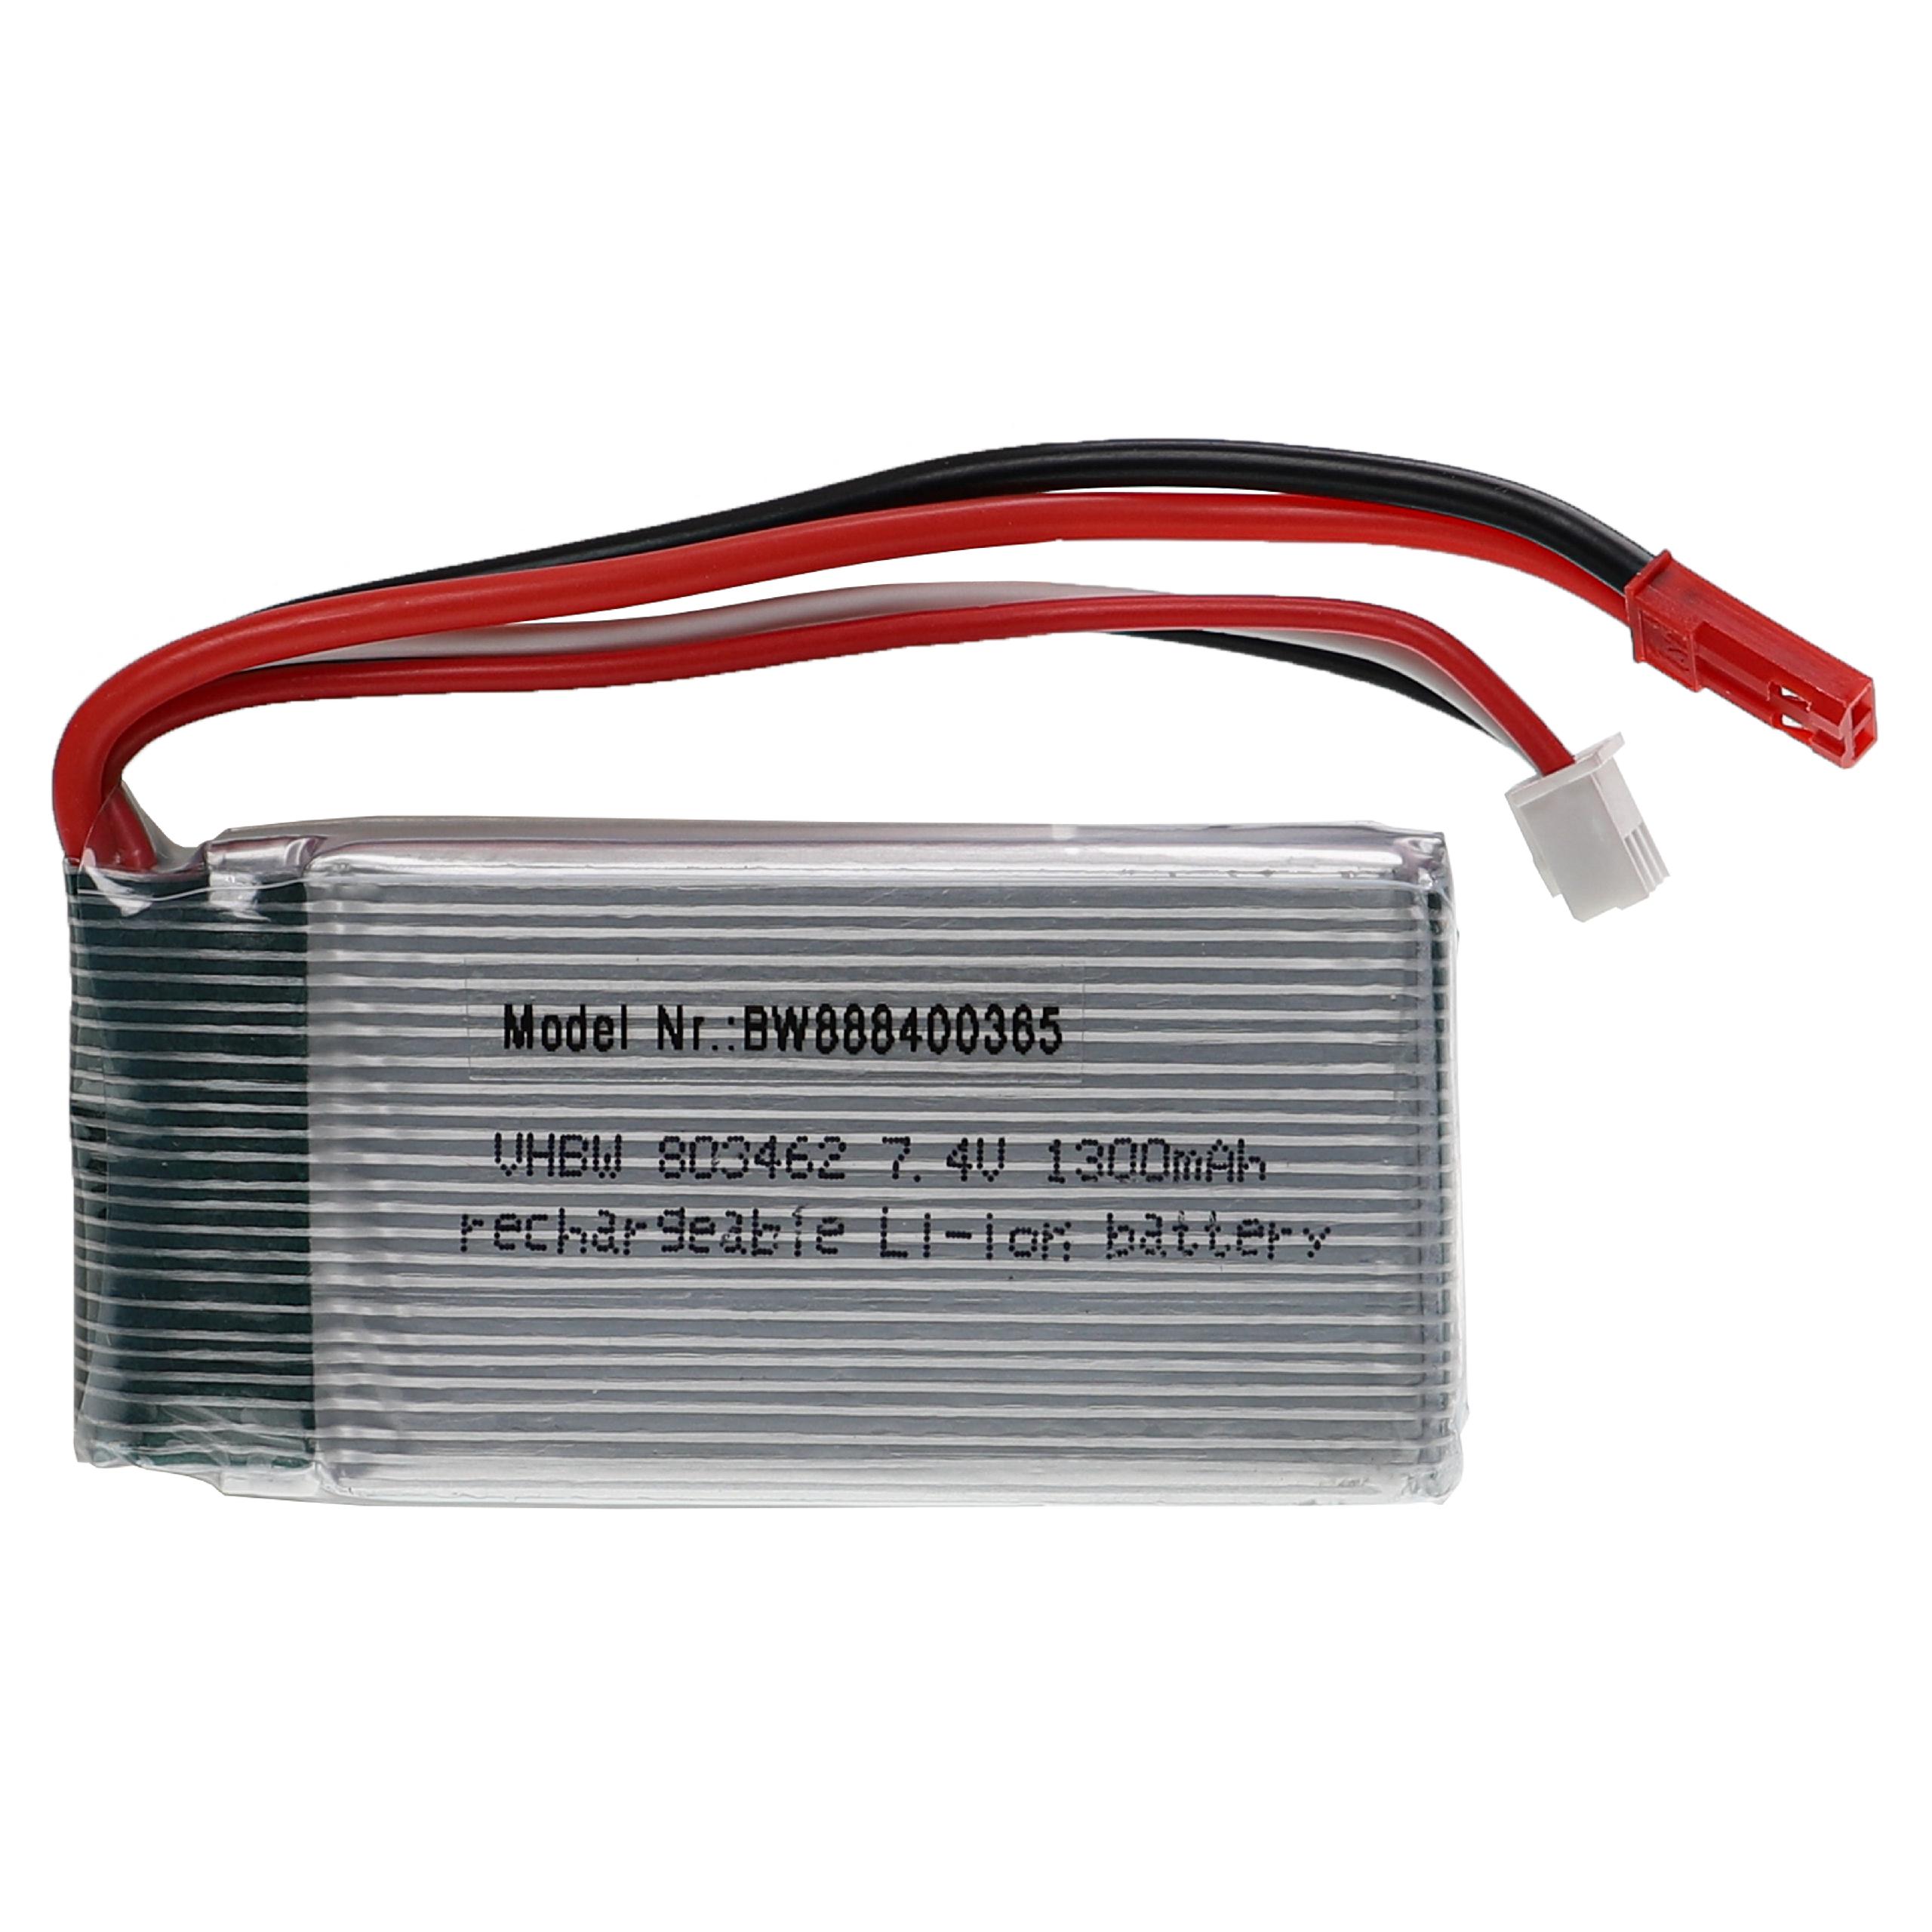 Batterie pour modèle radio-télécommandé - 1300mAh 7,4V Li-polymère, BEC